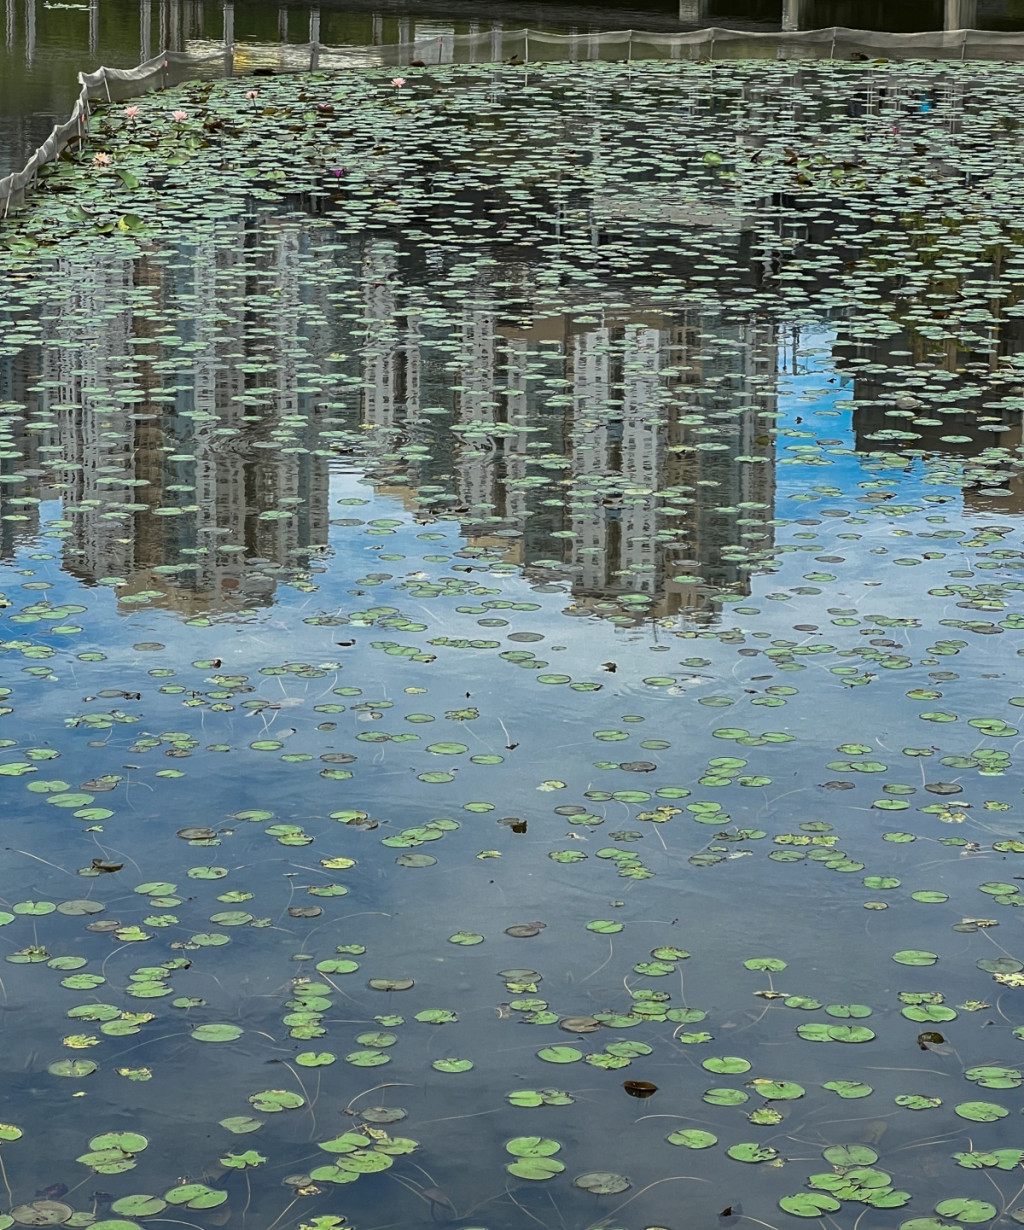 香港湿地公园内发现雀尸地点已加强清洁及消毒。资料图片